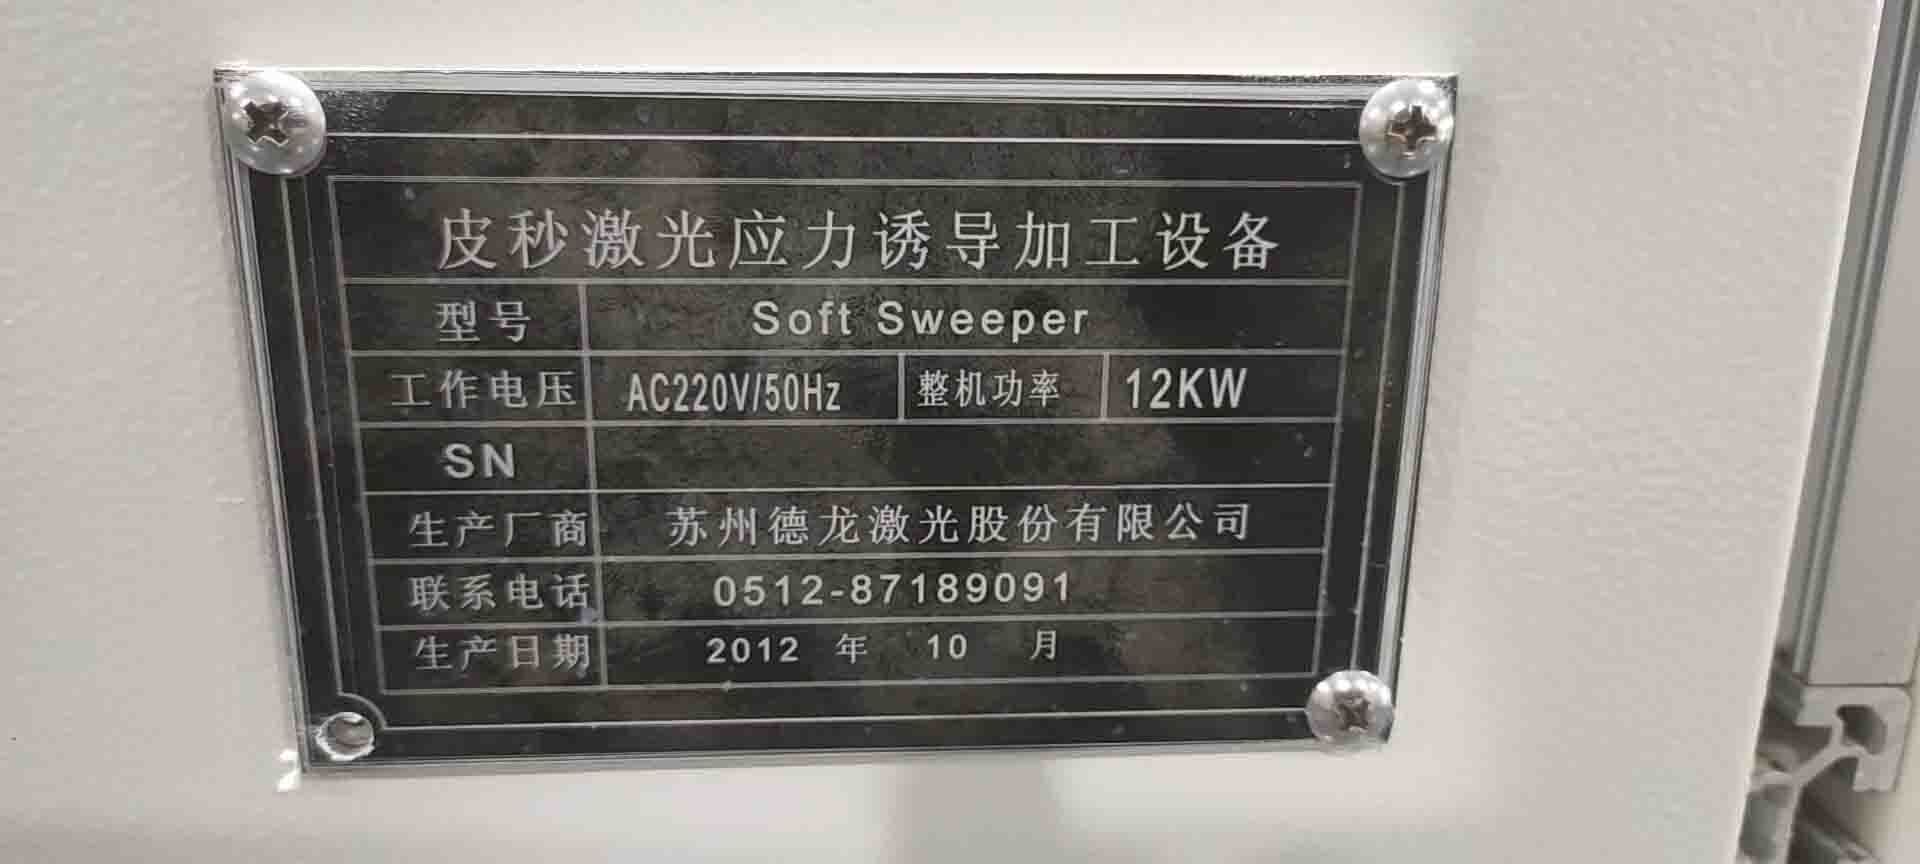 图为 已使用的 SUZHOU Soft Sweeper 待售